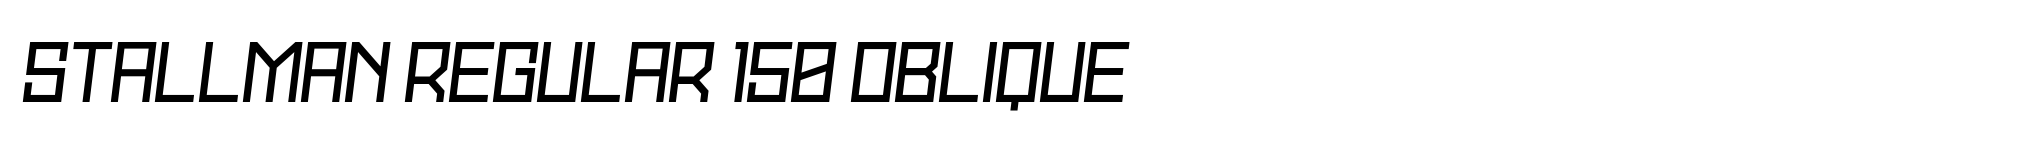 Stallman Regular 150 Oblique image